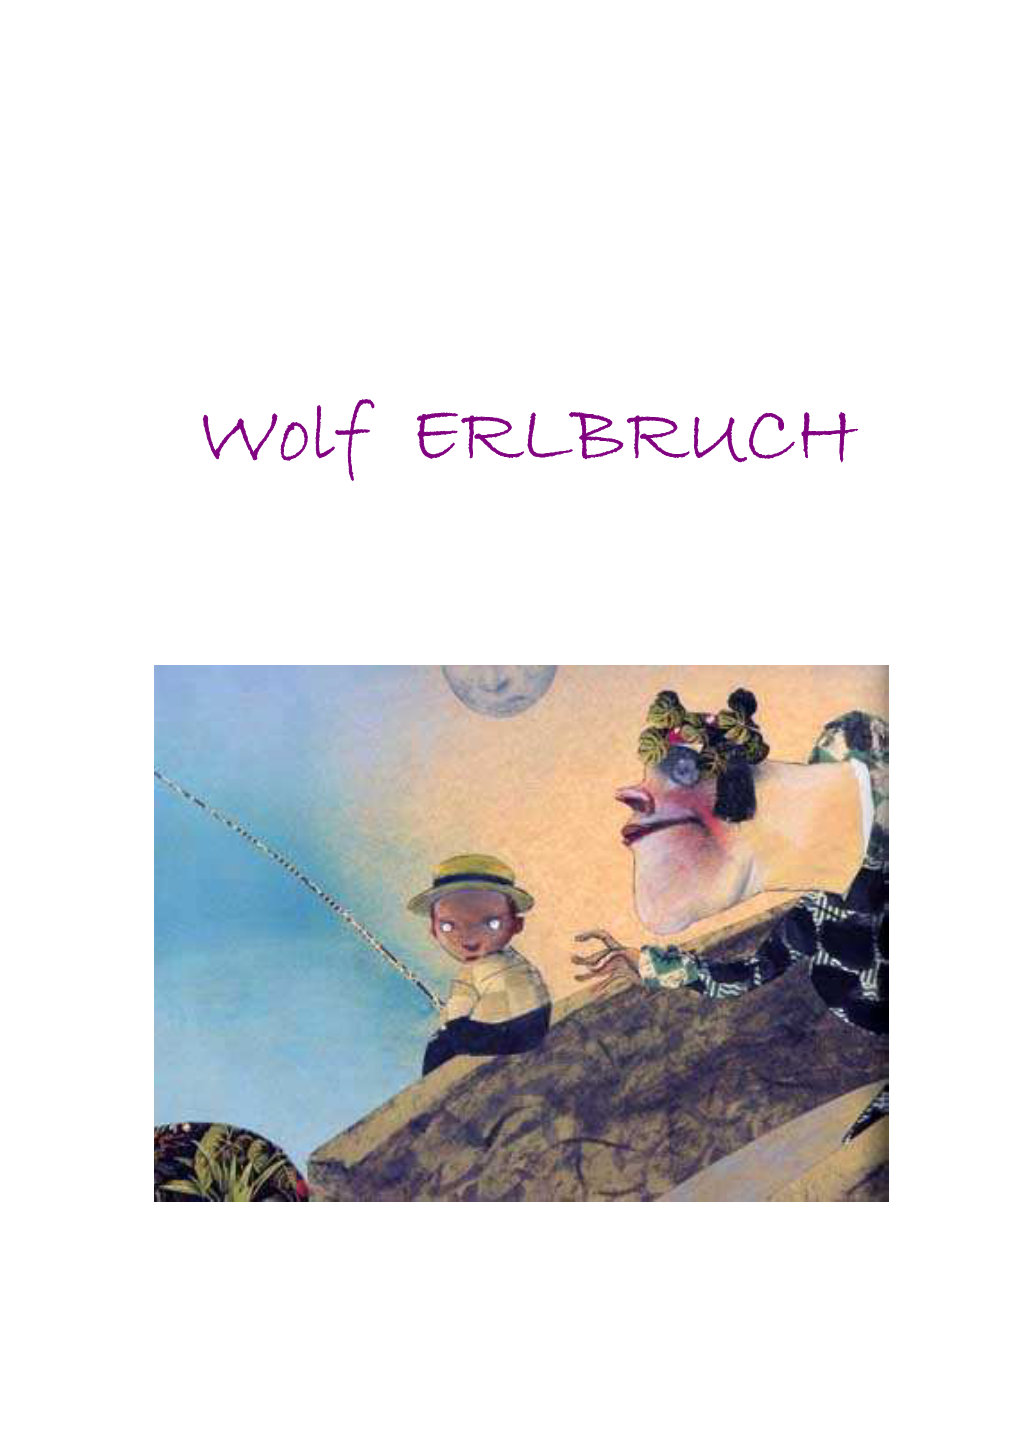 Wolf ERLBRUCH